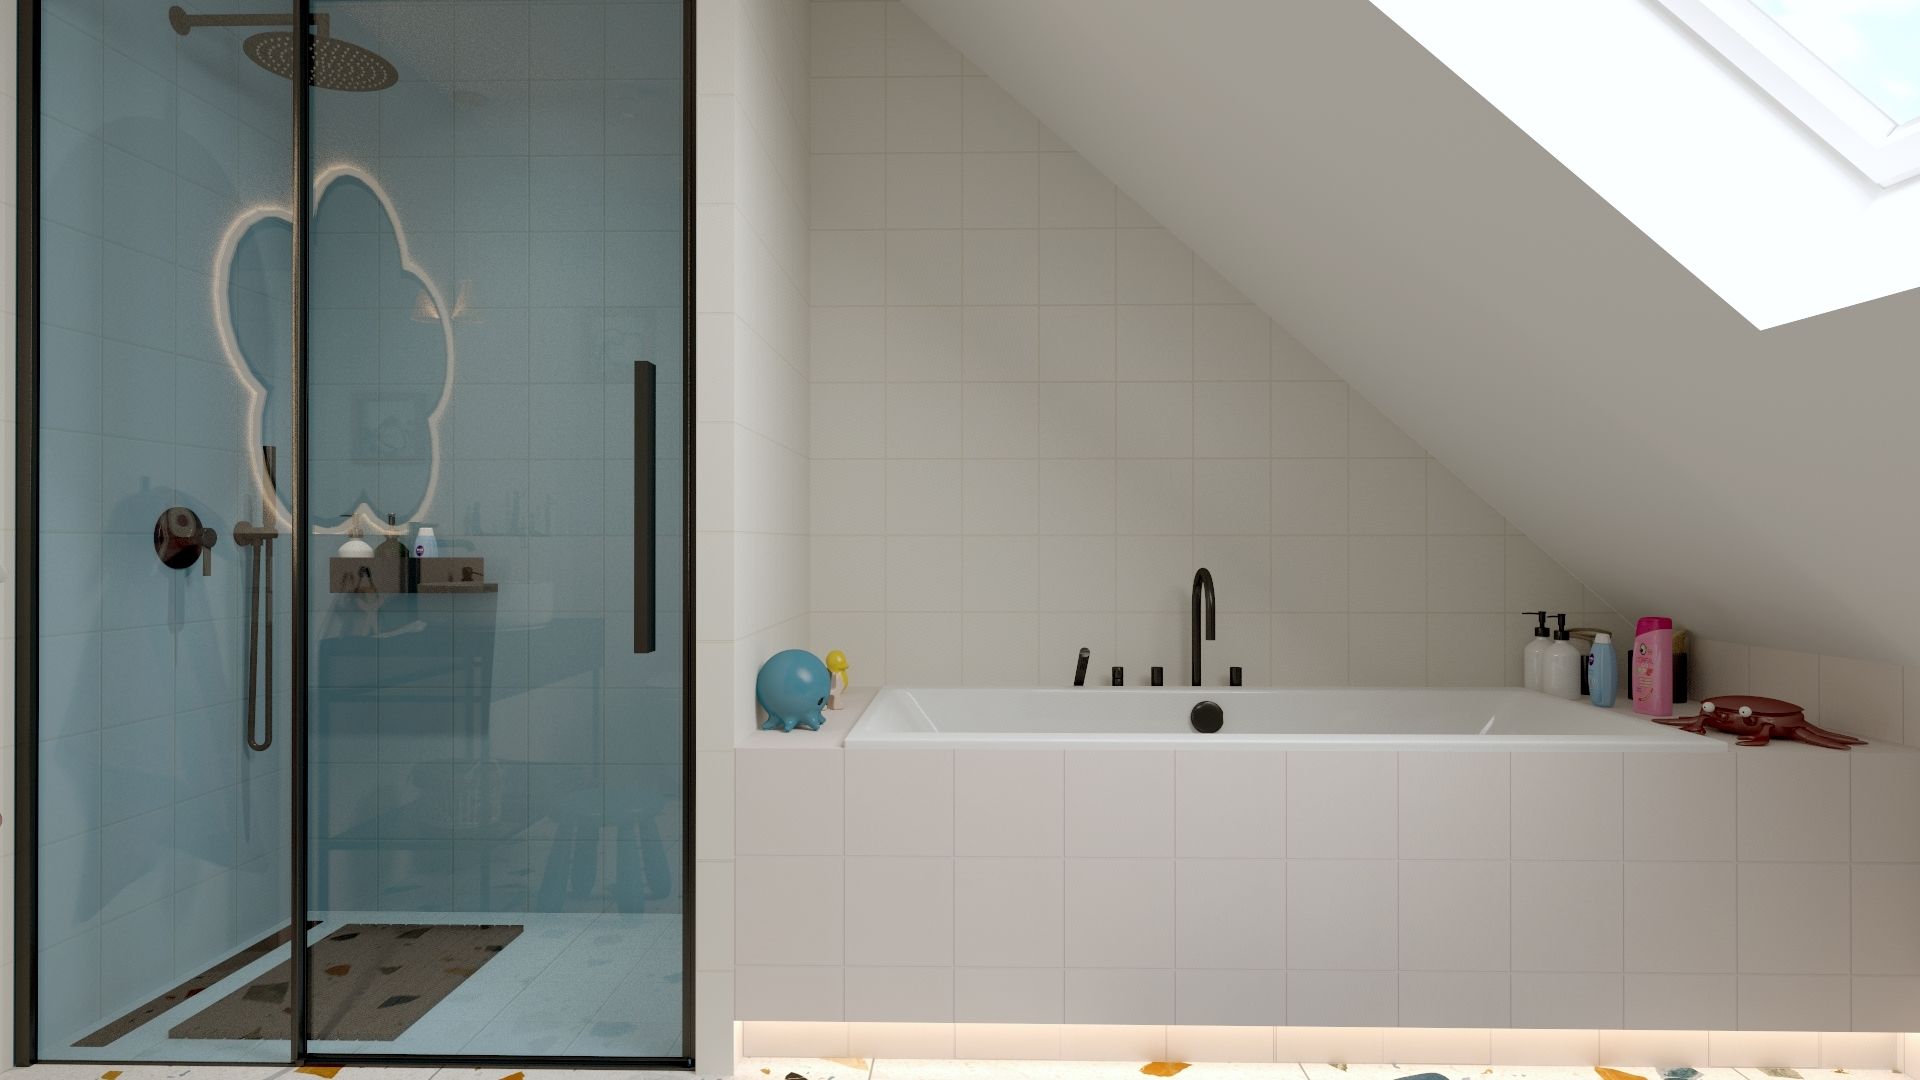 Głównym założeniem projektu było zlokalizowanie w łazience zarówno wanny, jak i kabiny prysznicowej. Projekt i zdjęcia: ATOM Projekty Wnętrz